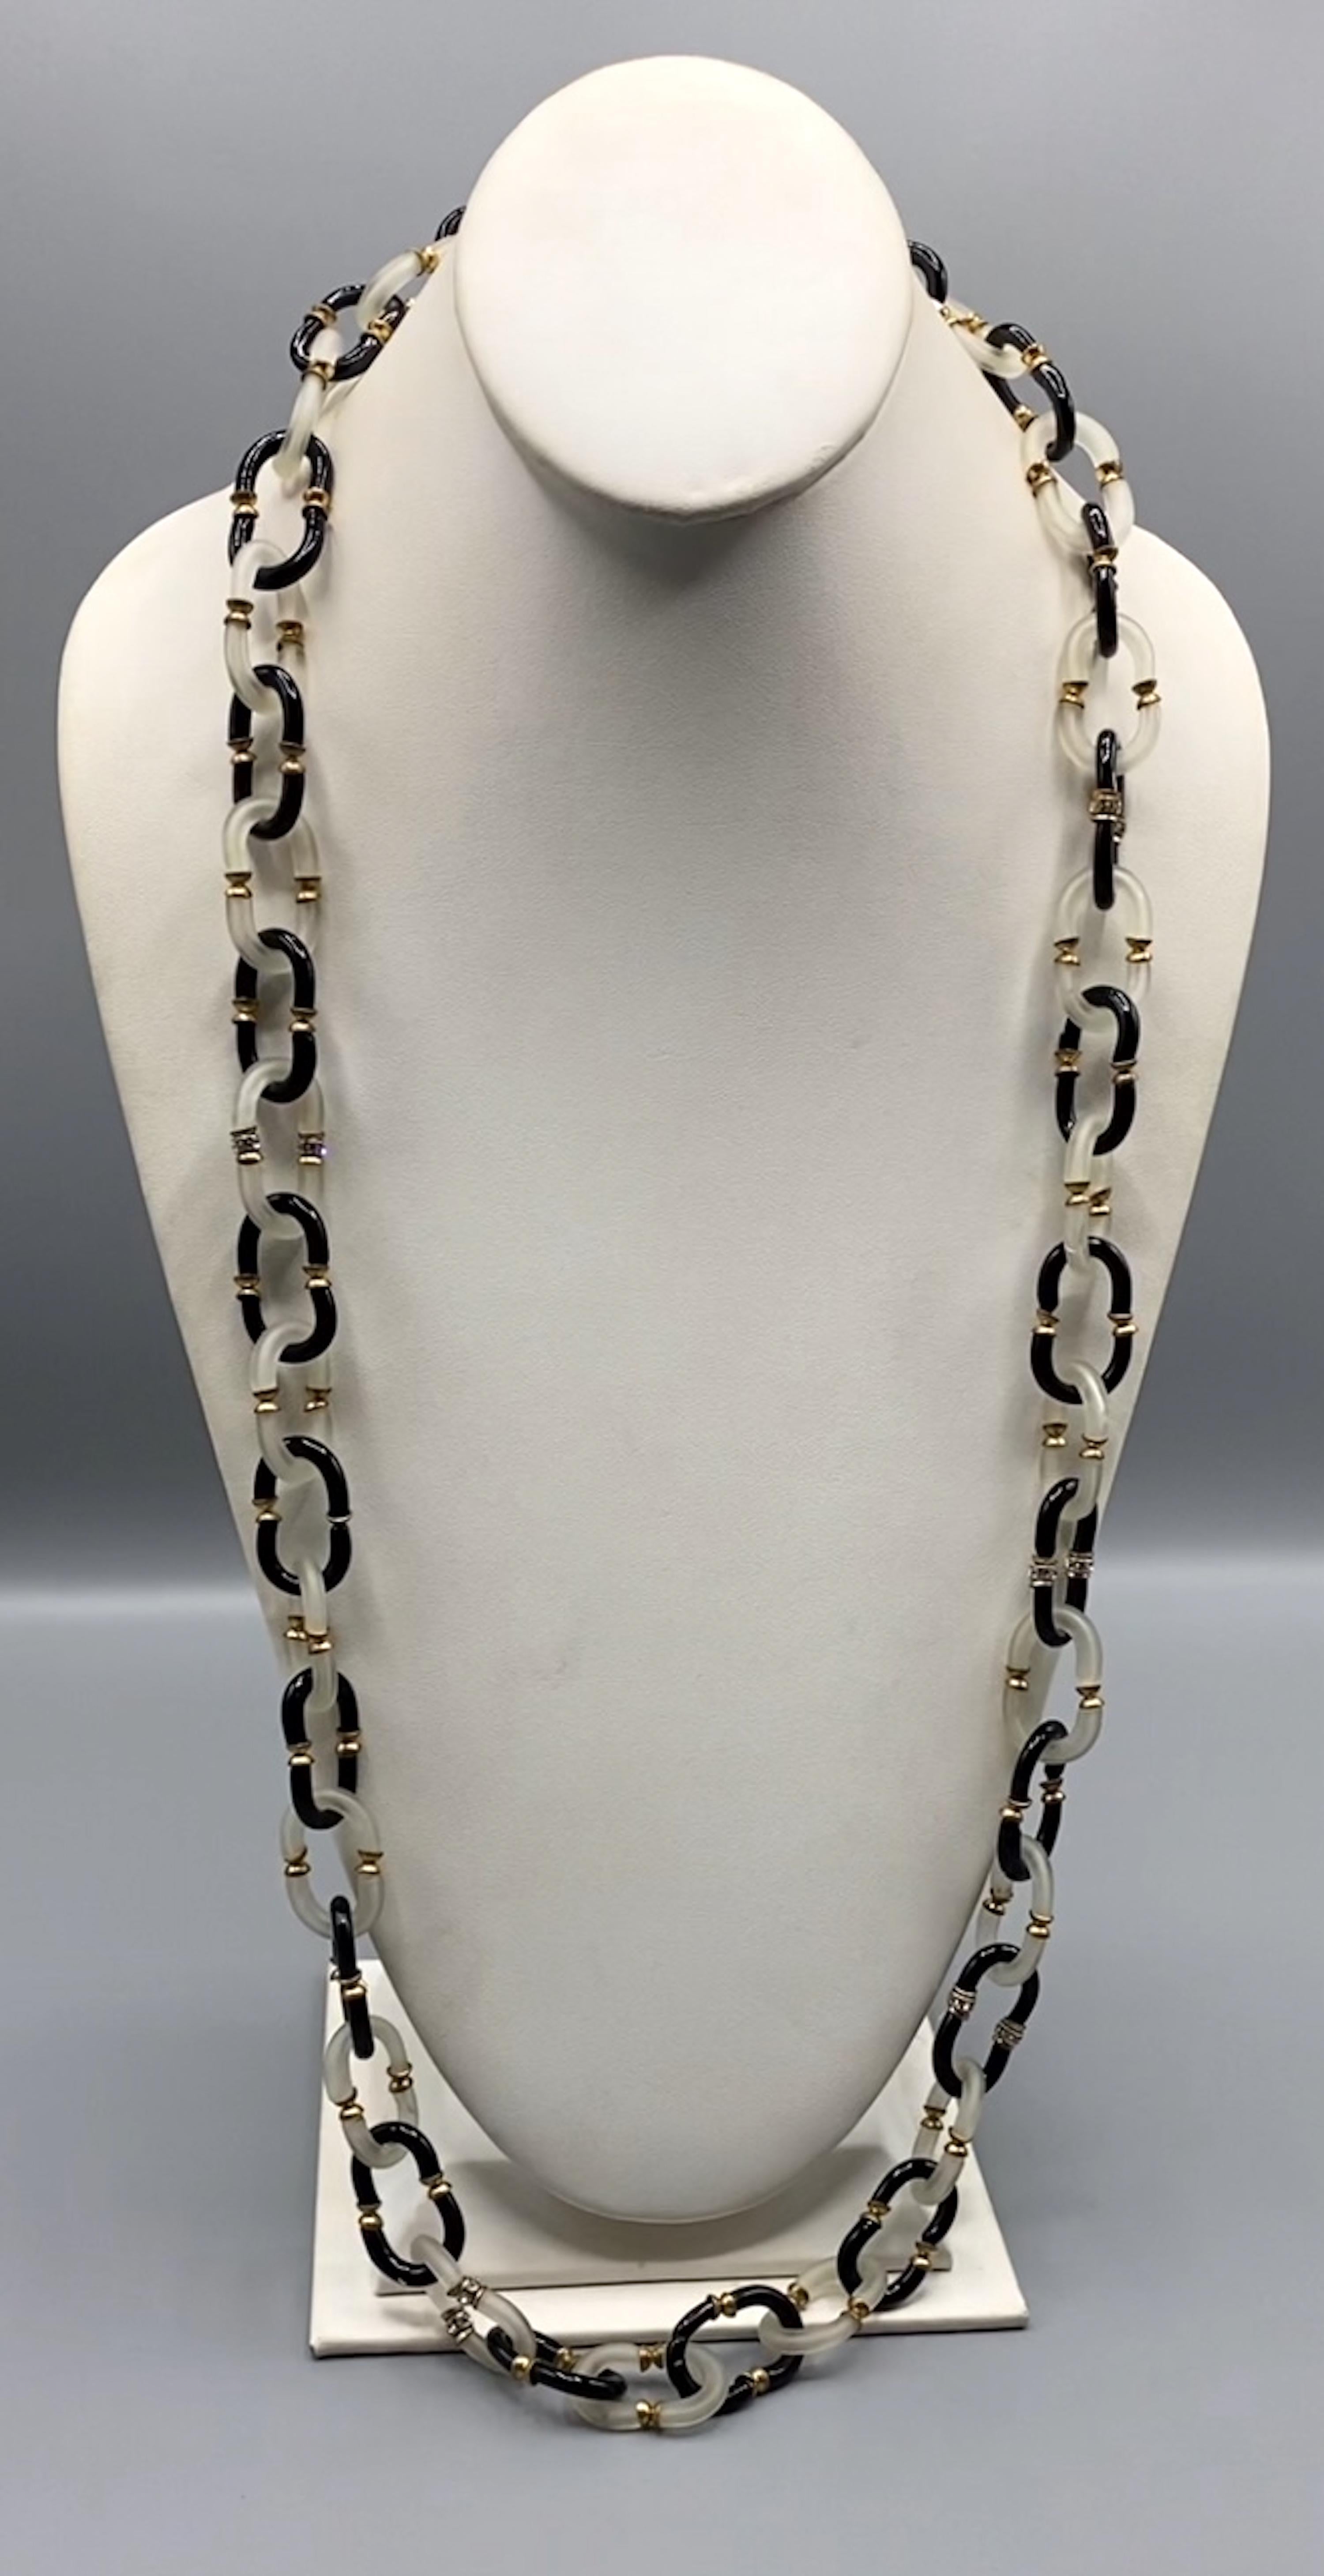 Hübsche Glaskettenkette von Archimede Seguso aus Italien. Die Kettenglieder werden von Hand aus zwei C-förmigen Glasstücken geformt. Die Halskette ist 37 Zoll lang und 0,75 Zoll breit.
Goldschließe mit Logo AS für 